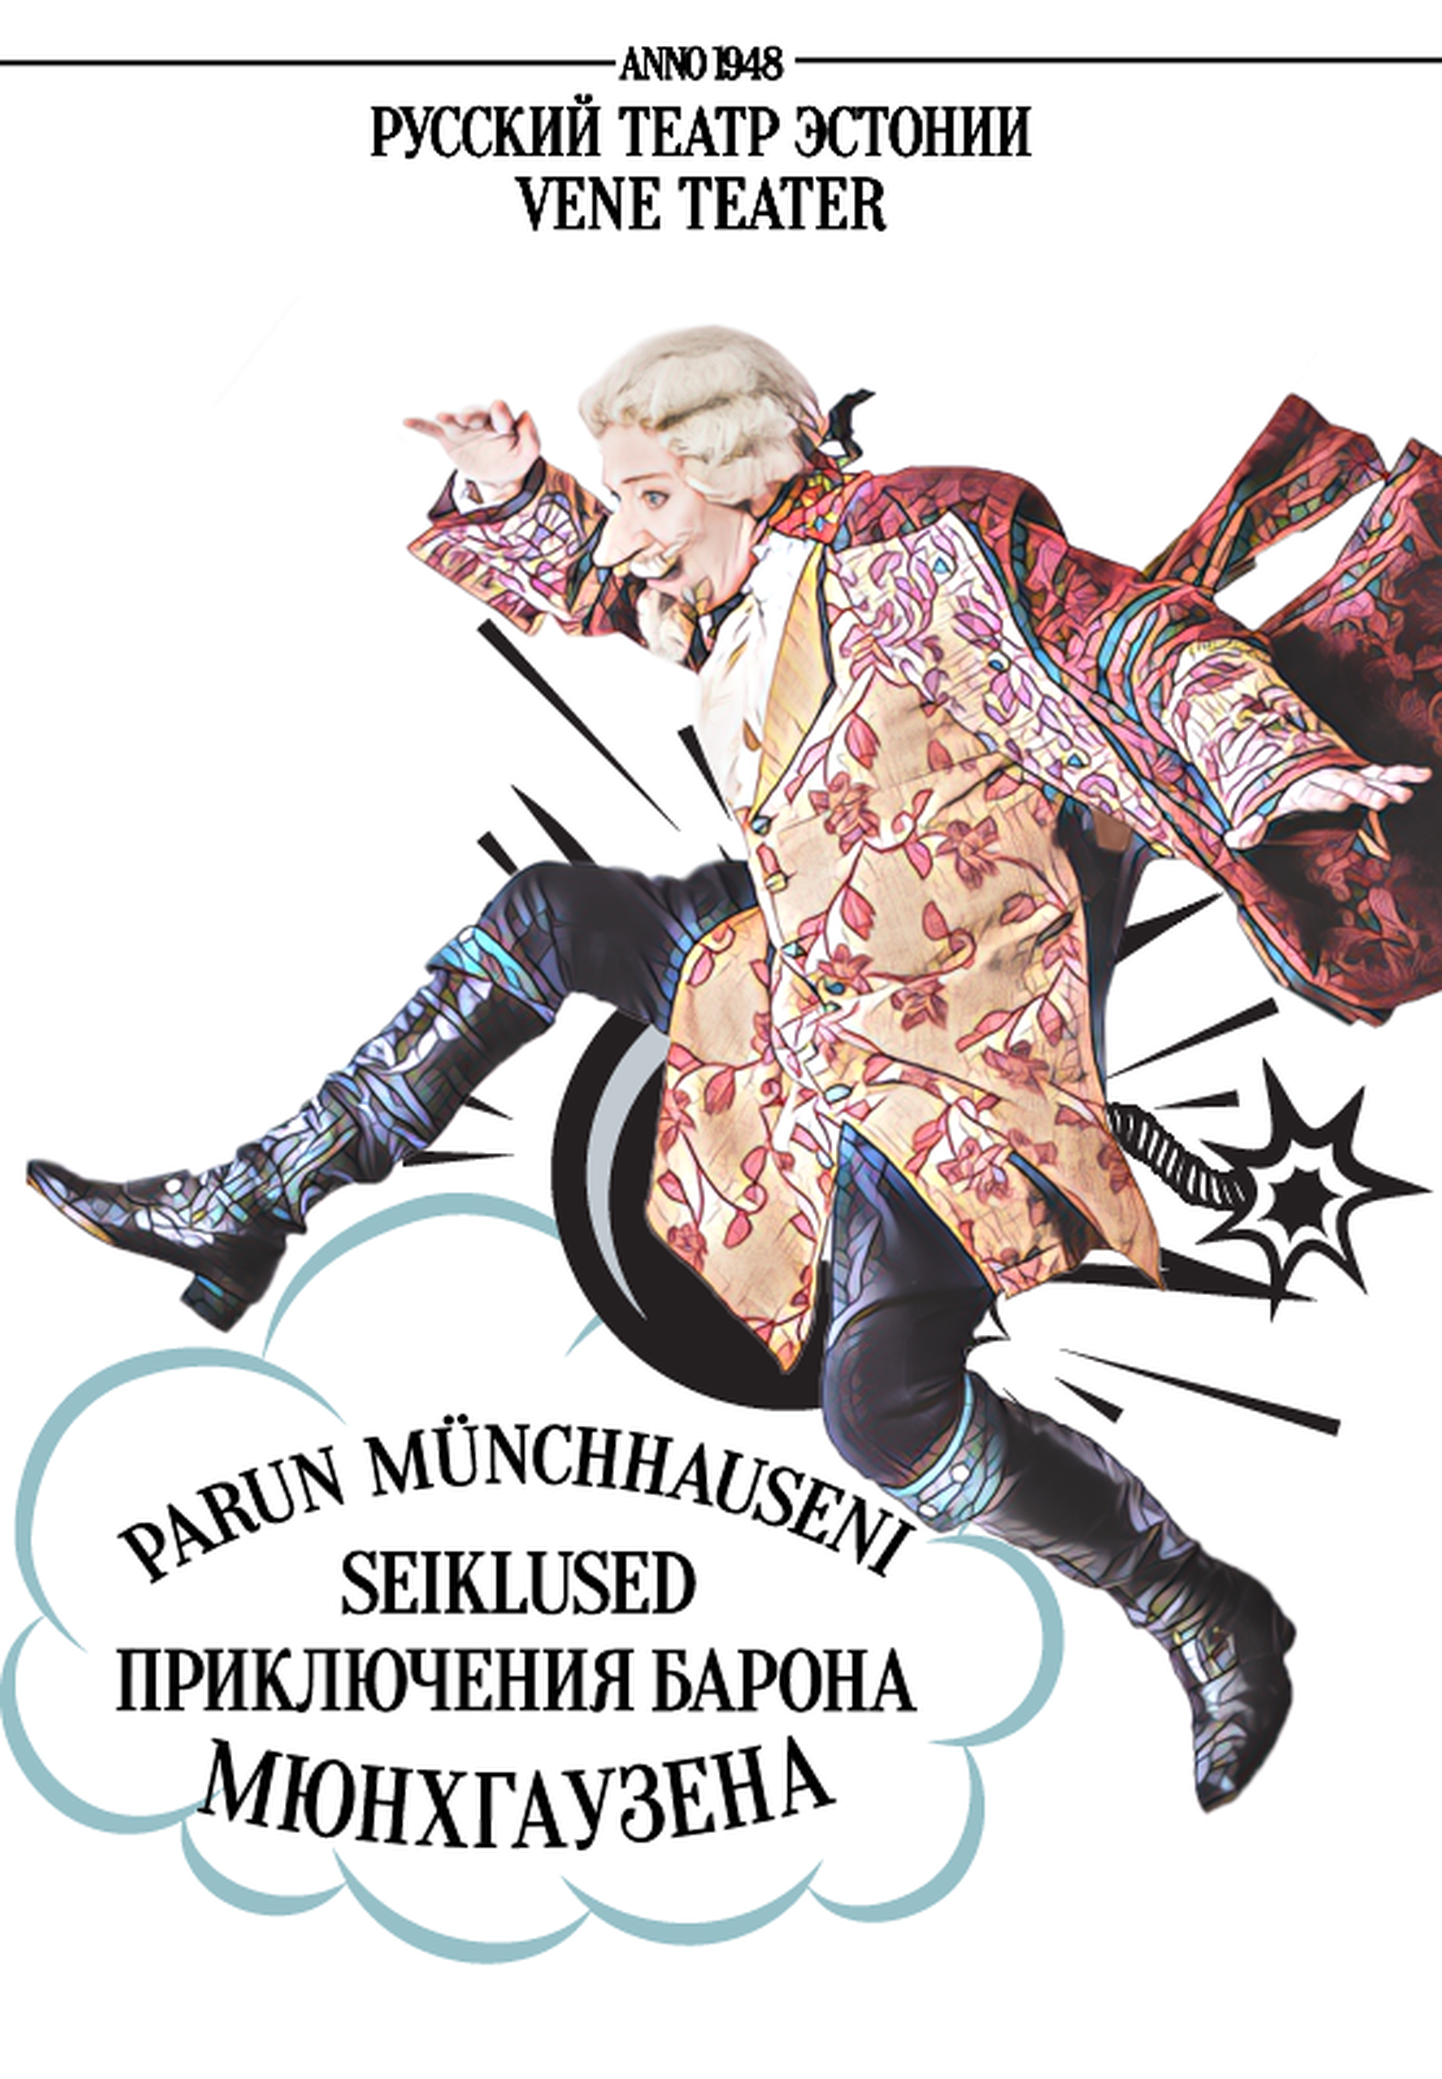 В Русском театре Эстонии состоится премьера спектакля «Приключения барона Мюнхгаузена».